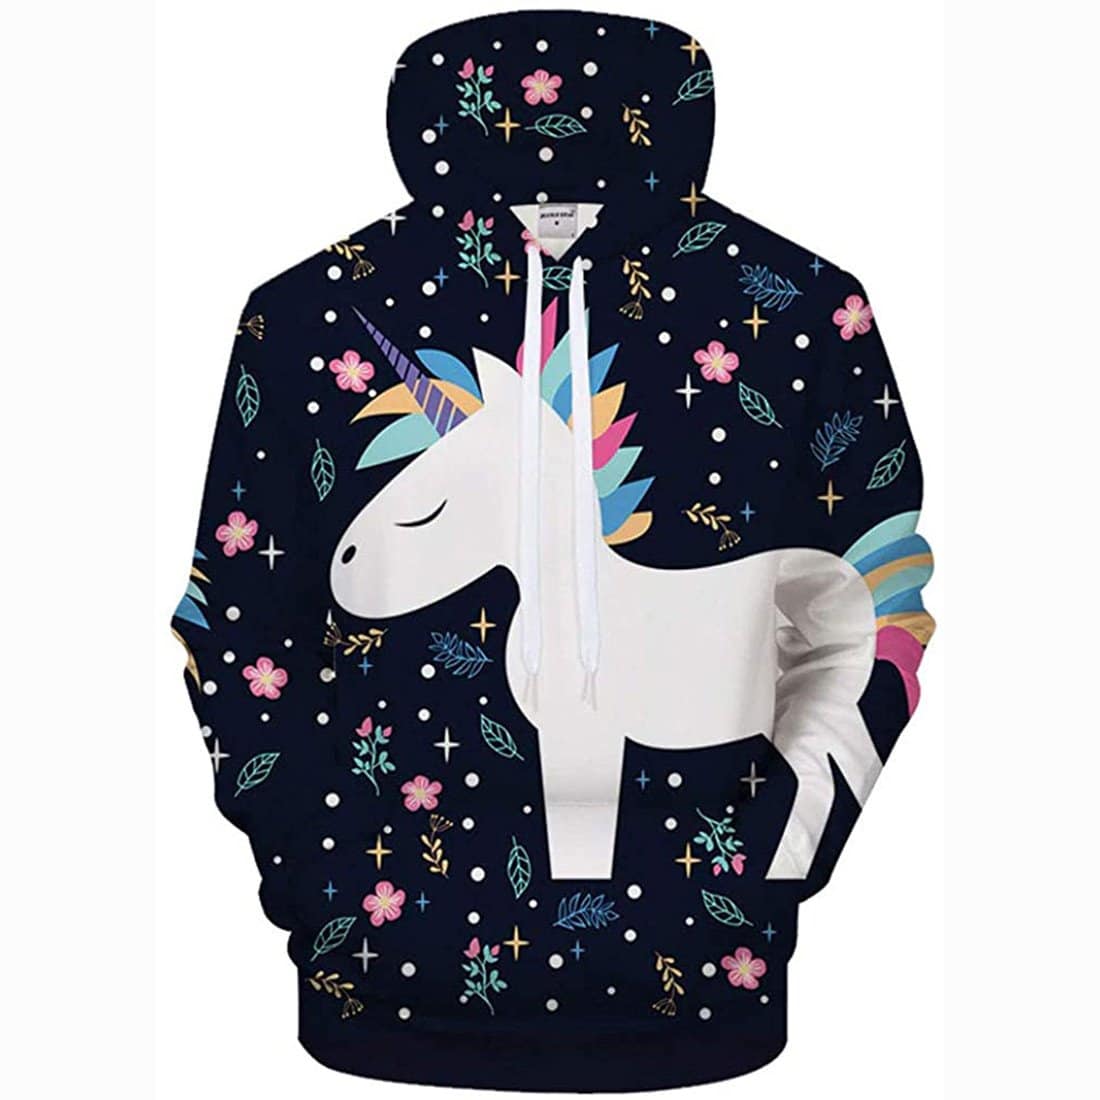 Unicorn 3D Print Realistic Pullover Hoodie Hooded Sweatshirt